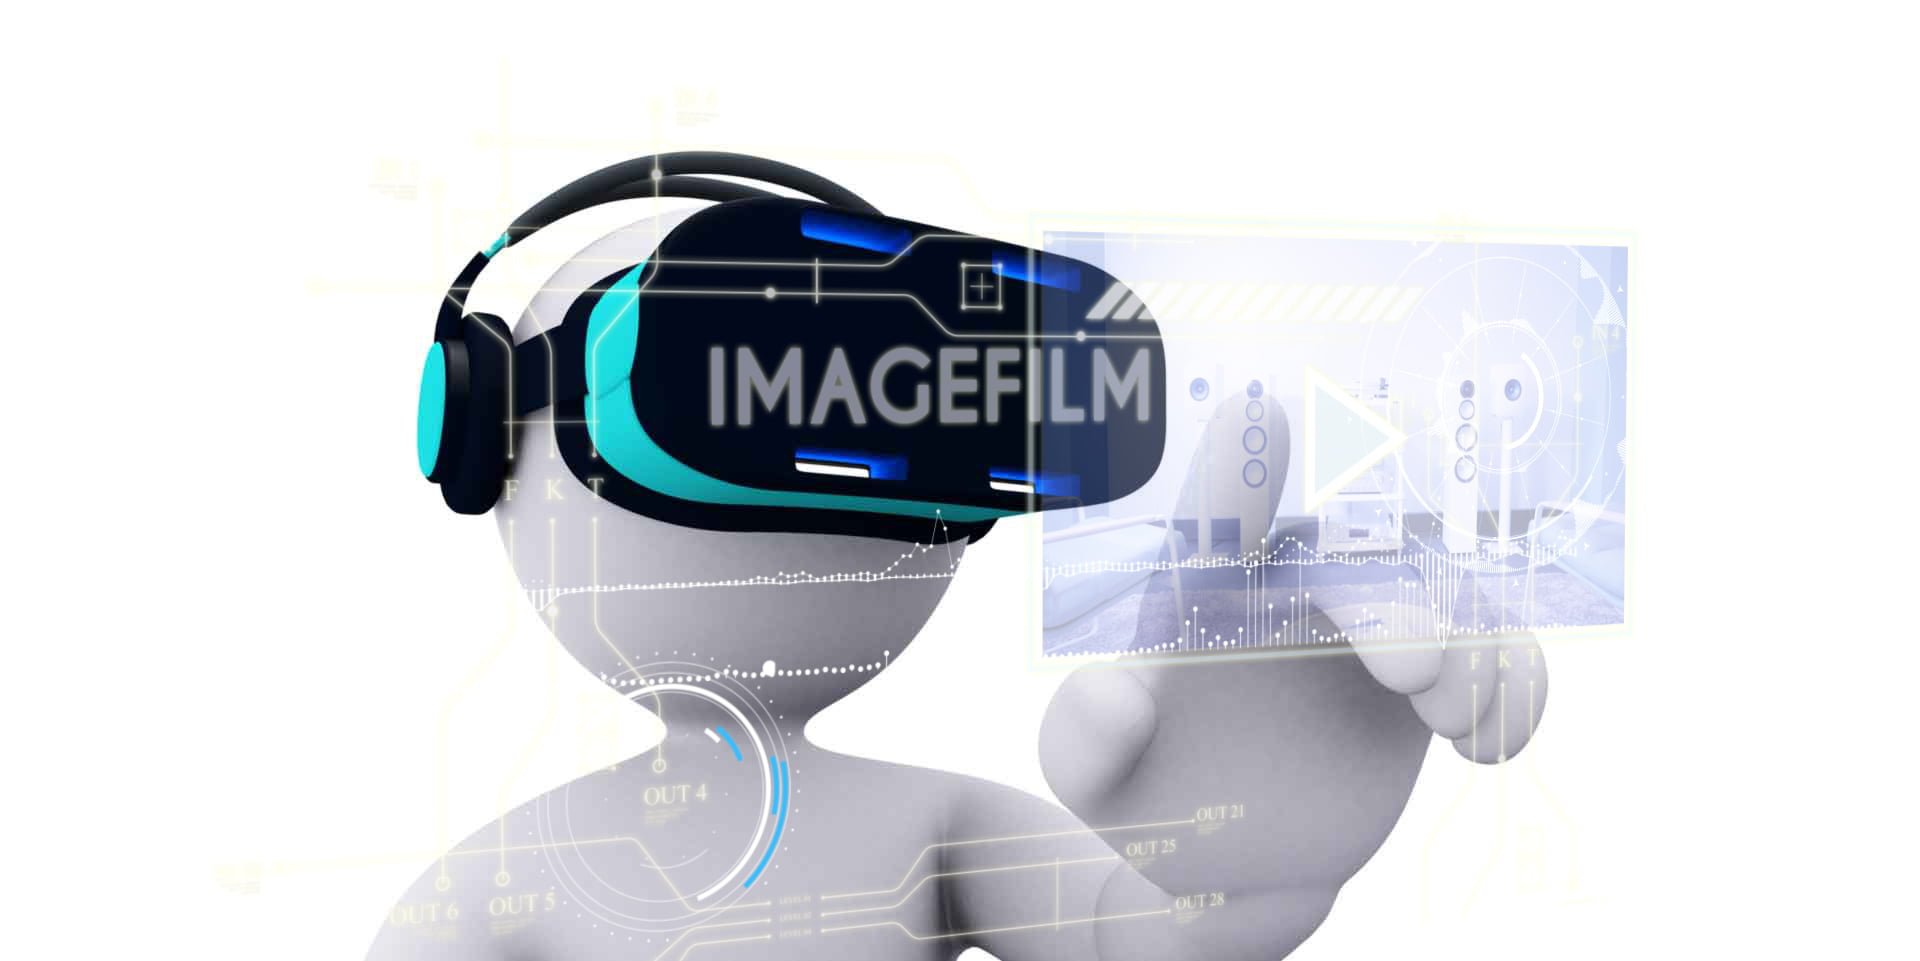 Stickman Virtual Reality - Imagefilm